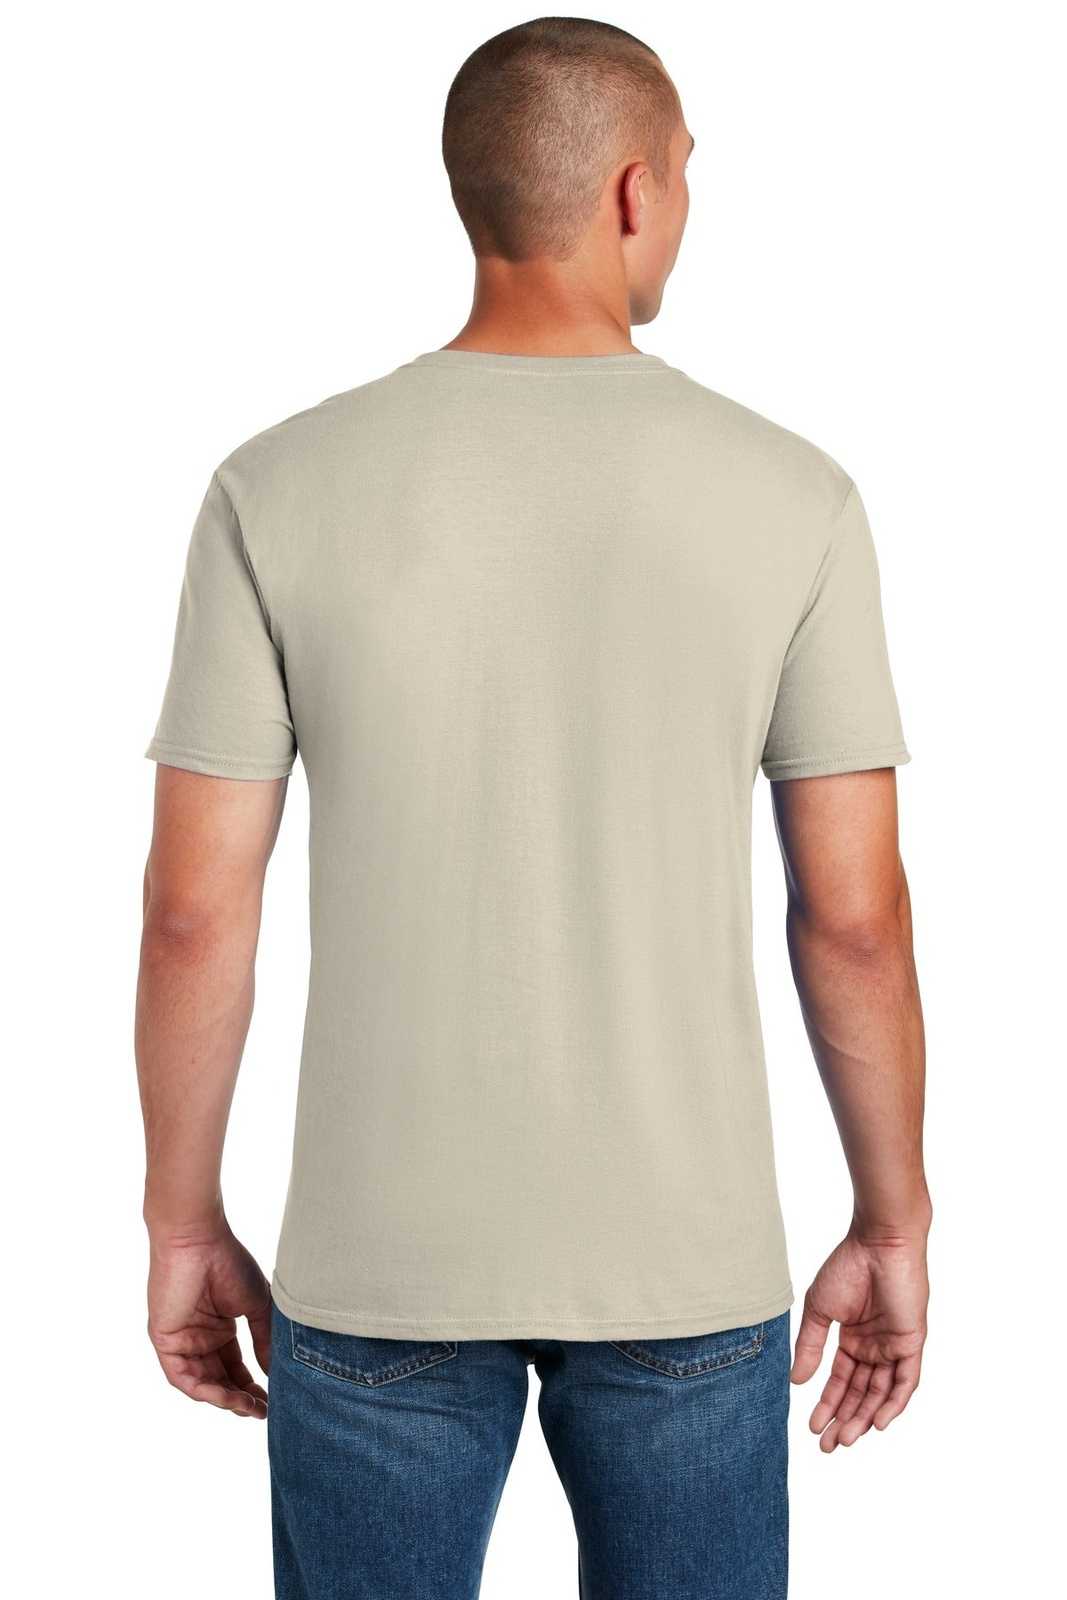 Gildan 64000 Softstyle T-Shirt - Sand - HIT a Double